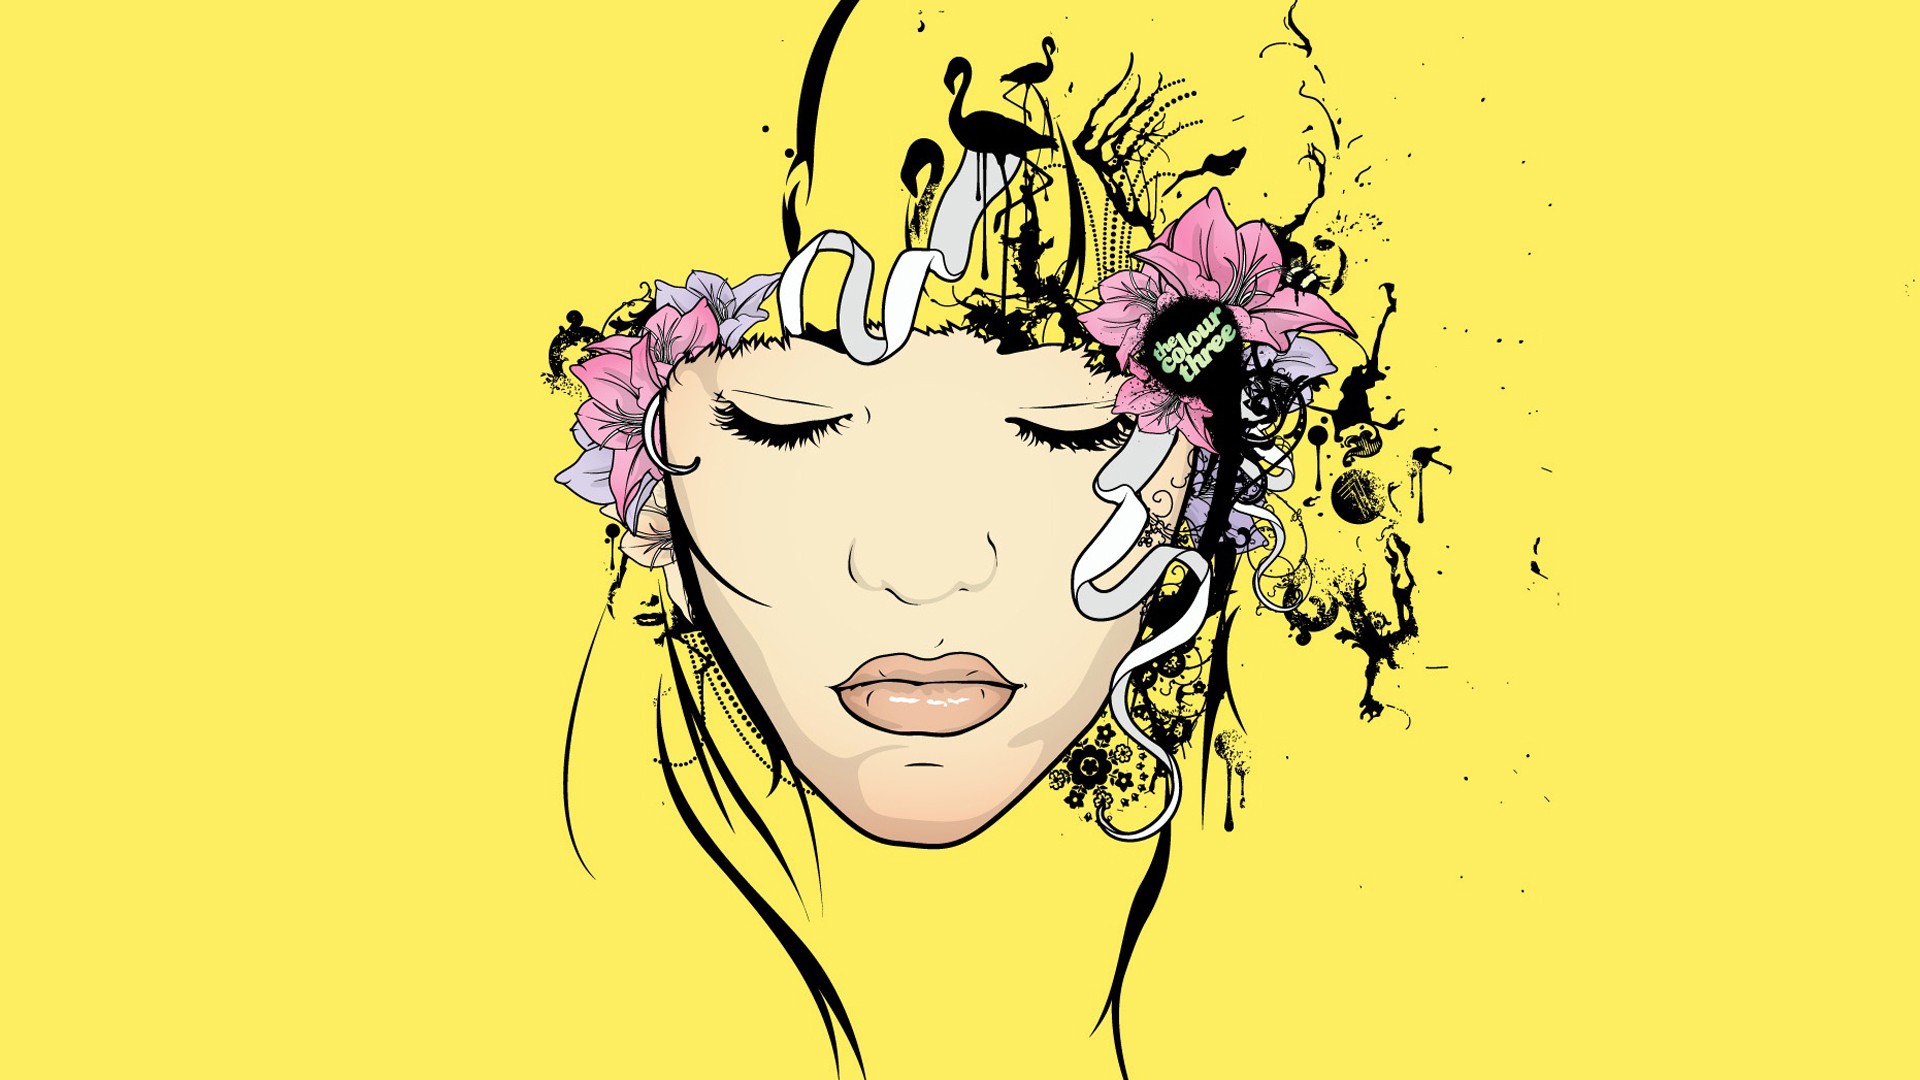 carta da parati moderna gialla,viso,giallo,illustrazione,disegno grafico,testa